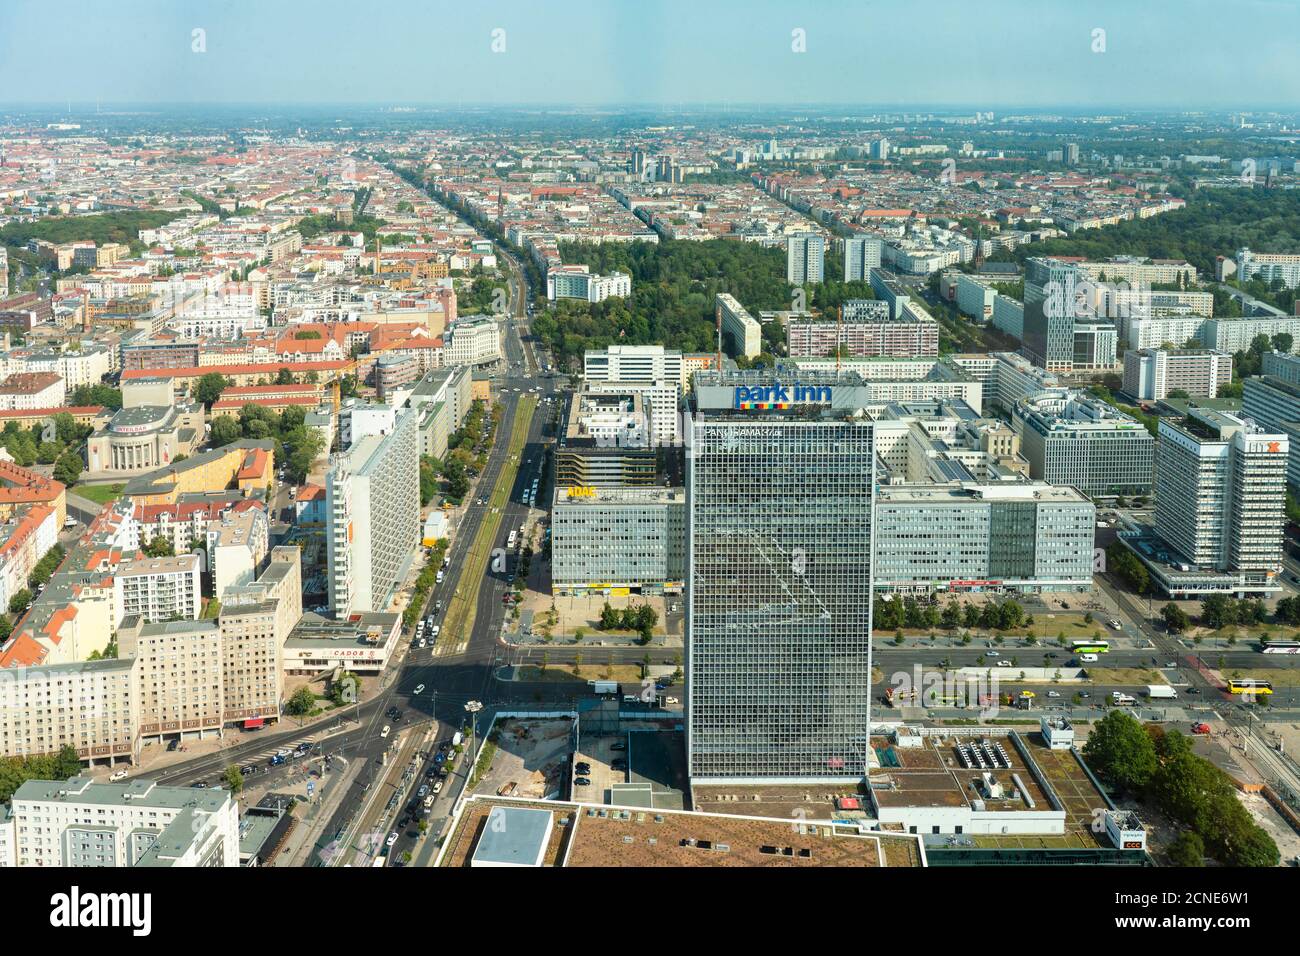 Vista aerea dell'hotel Park Inn e Alexander Platz con Prenzlauer Berg sullo sfondo, Berlino, Germania, Europa Foto Stock